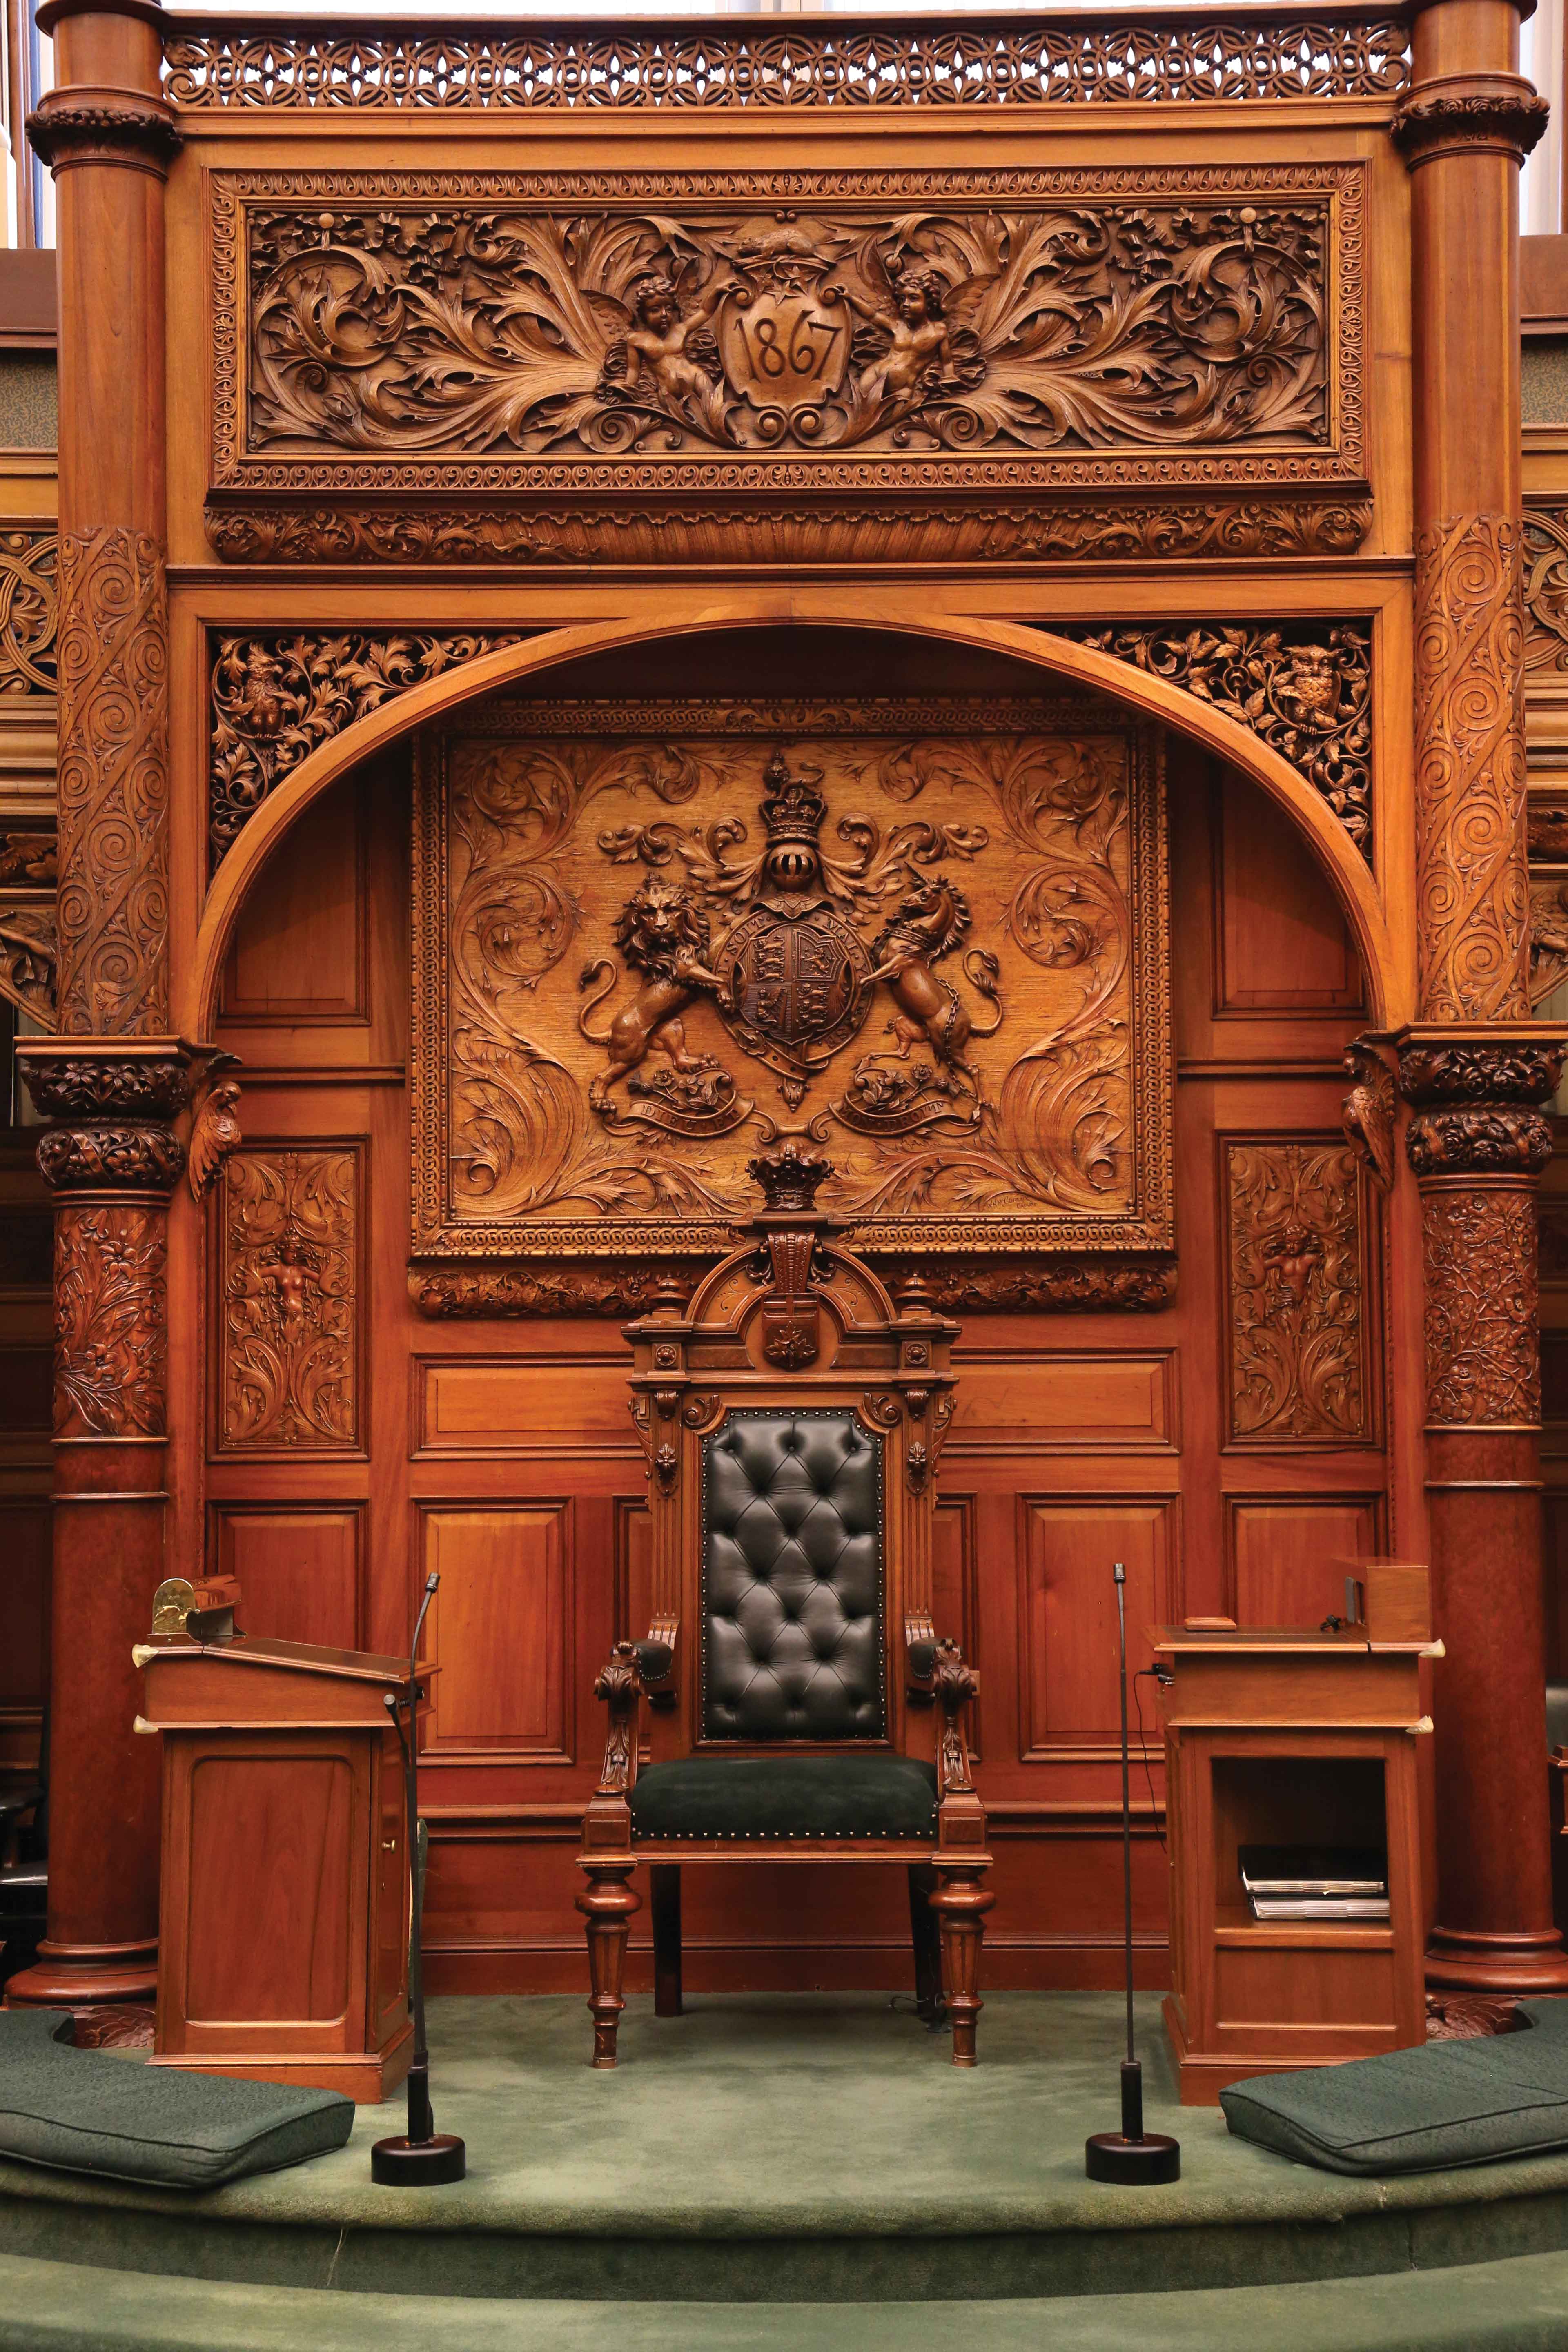 Le trône orné sur lequel siège le Président.